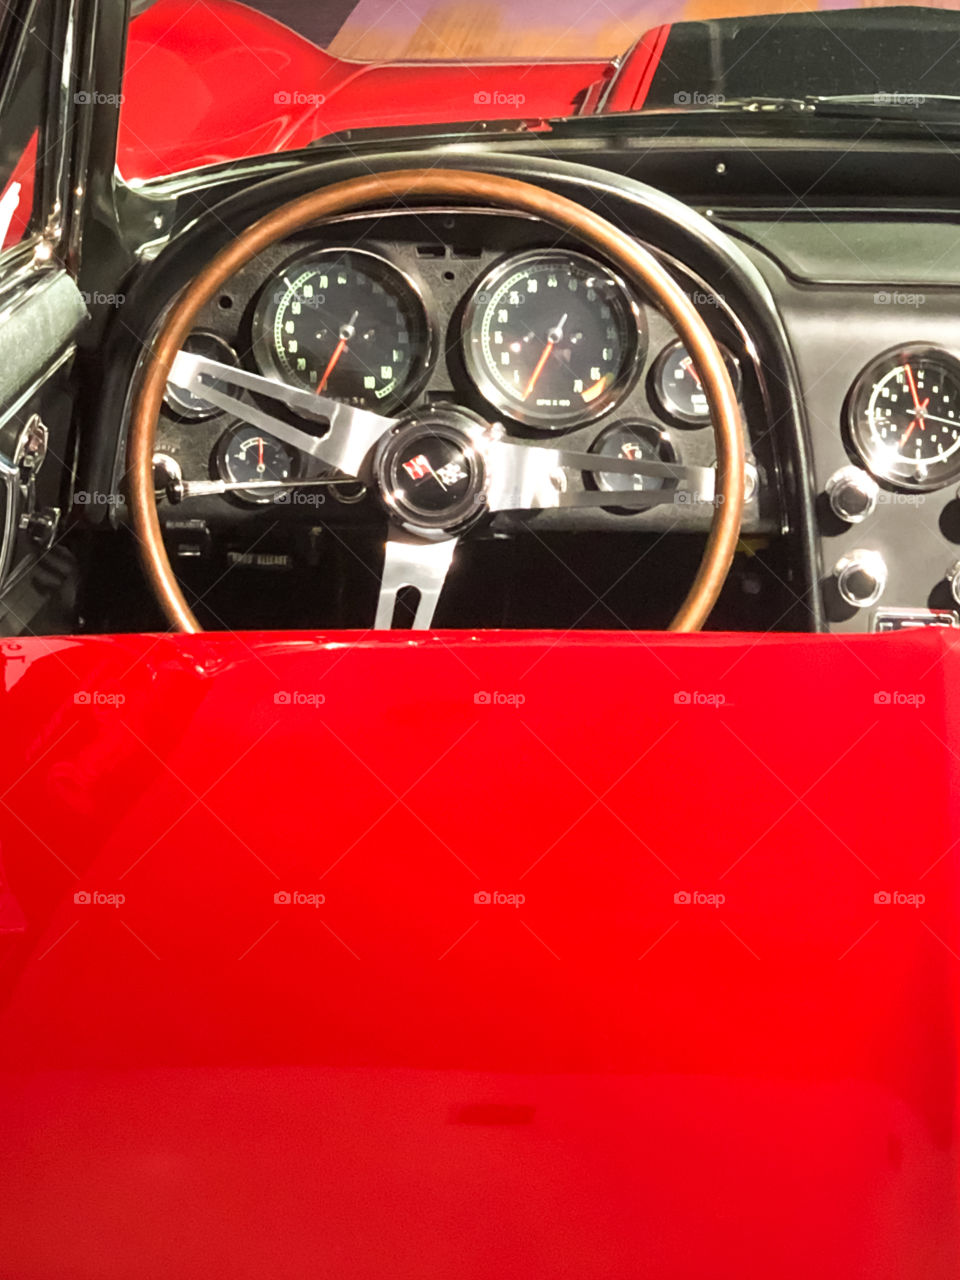 interior of red corvette convertable